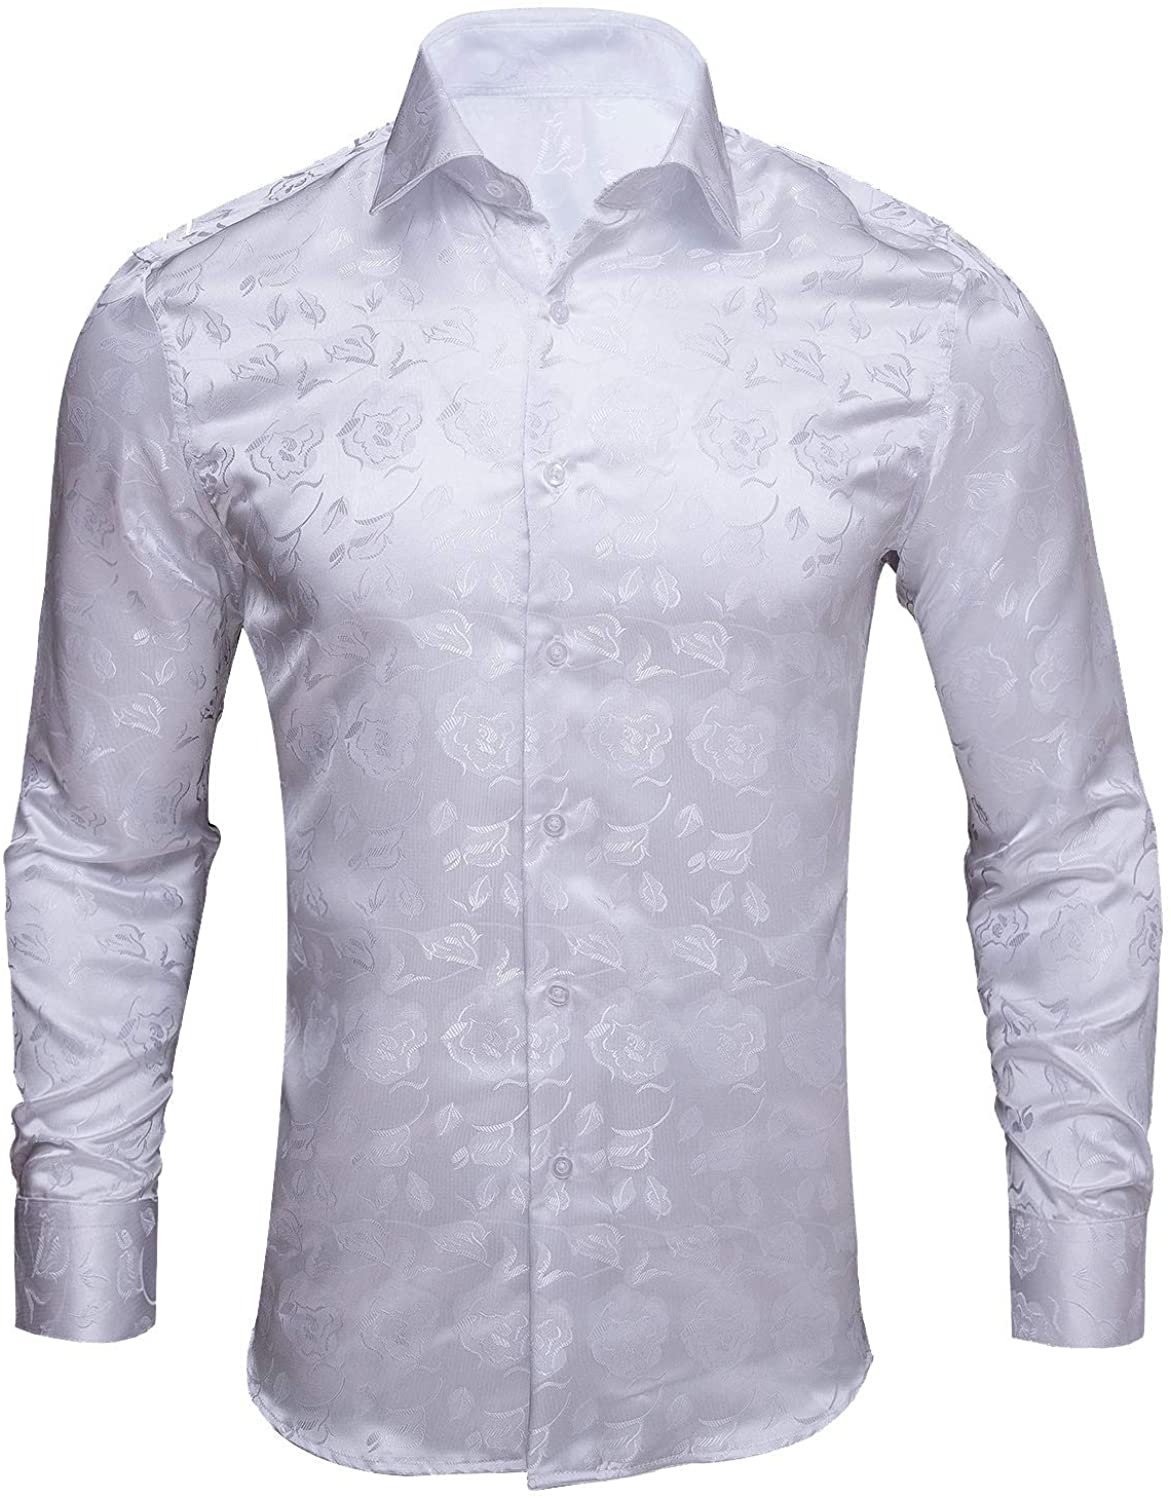 Barry.Wang Paisley Men Shirts,Long Sleeve Woven Silk Flower Button Dress Shirt Formal Casual